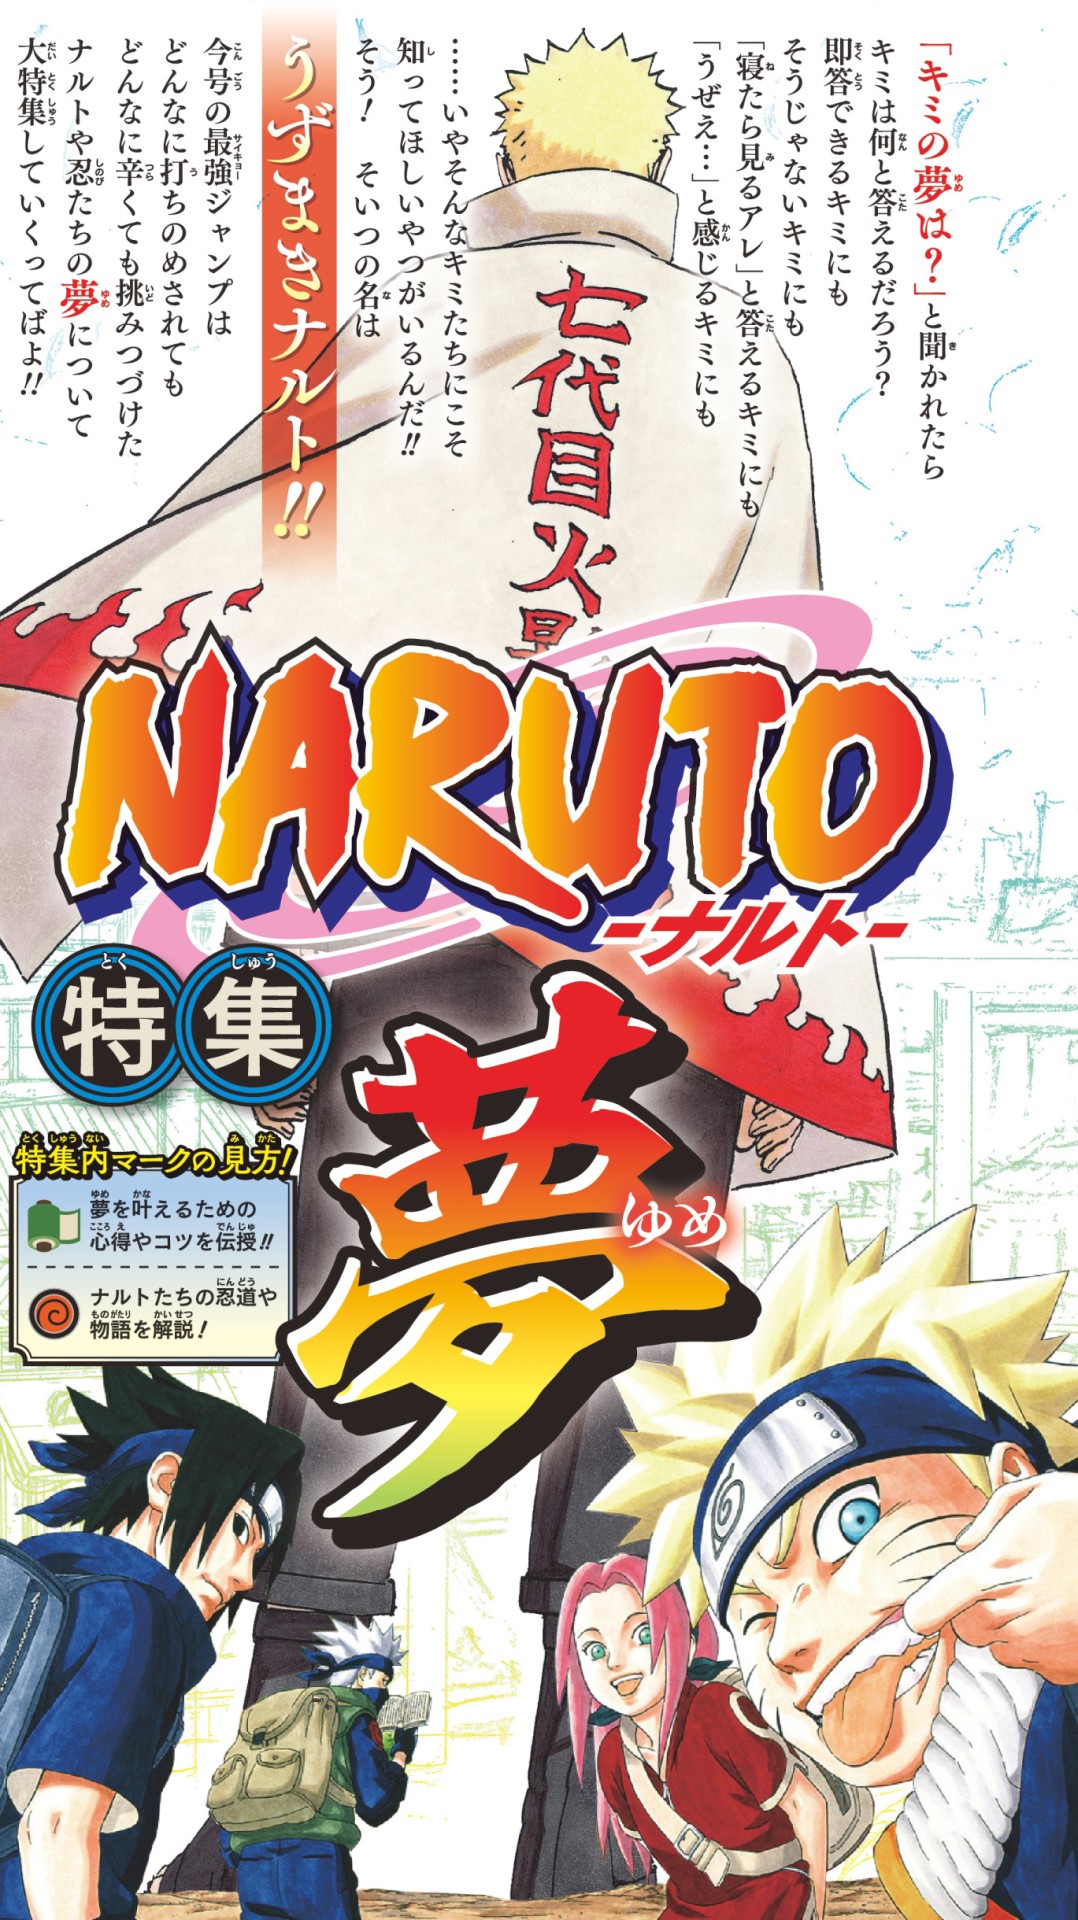 Soldes Naruto Rikudo - Nos bonnes affaires de janvier